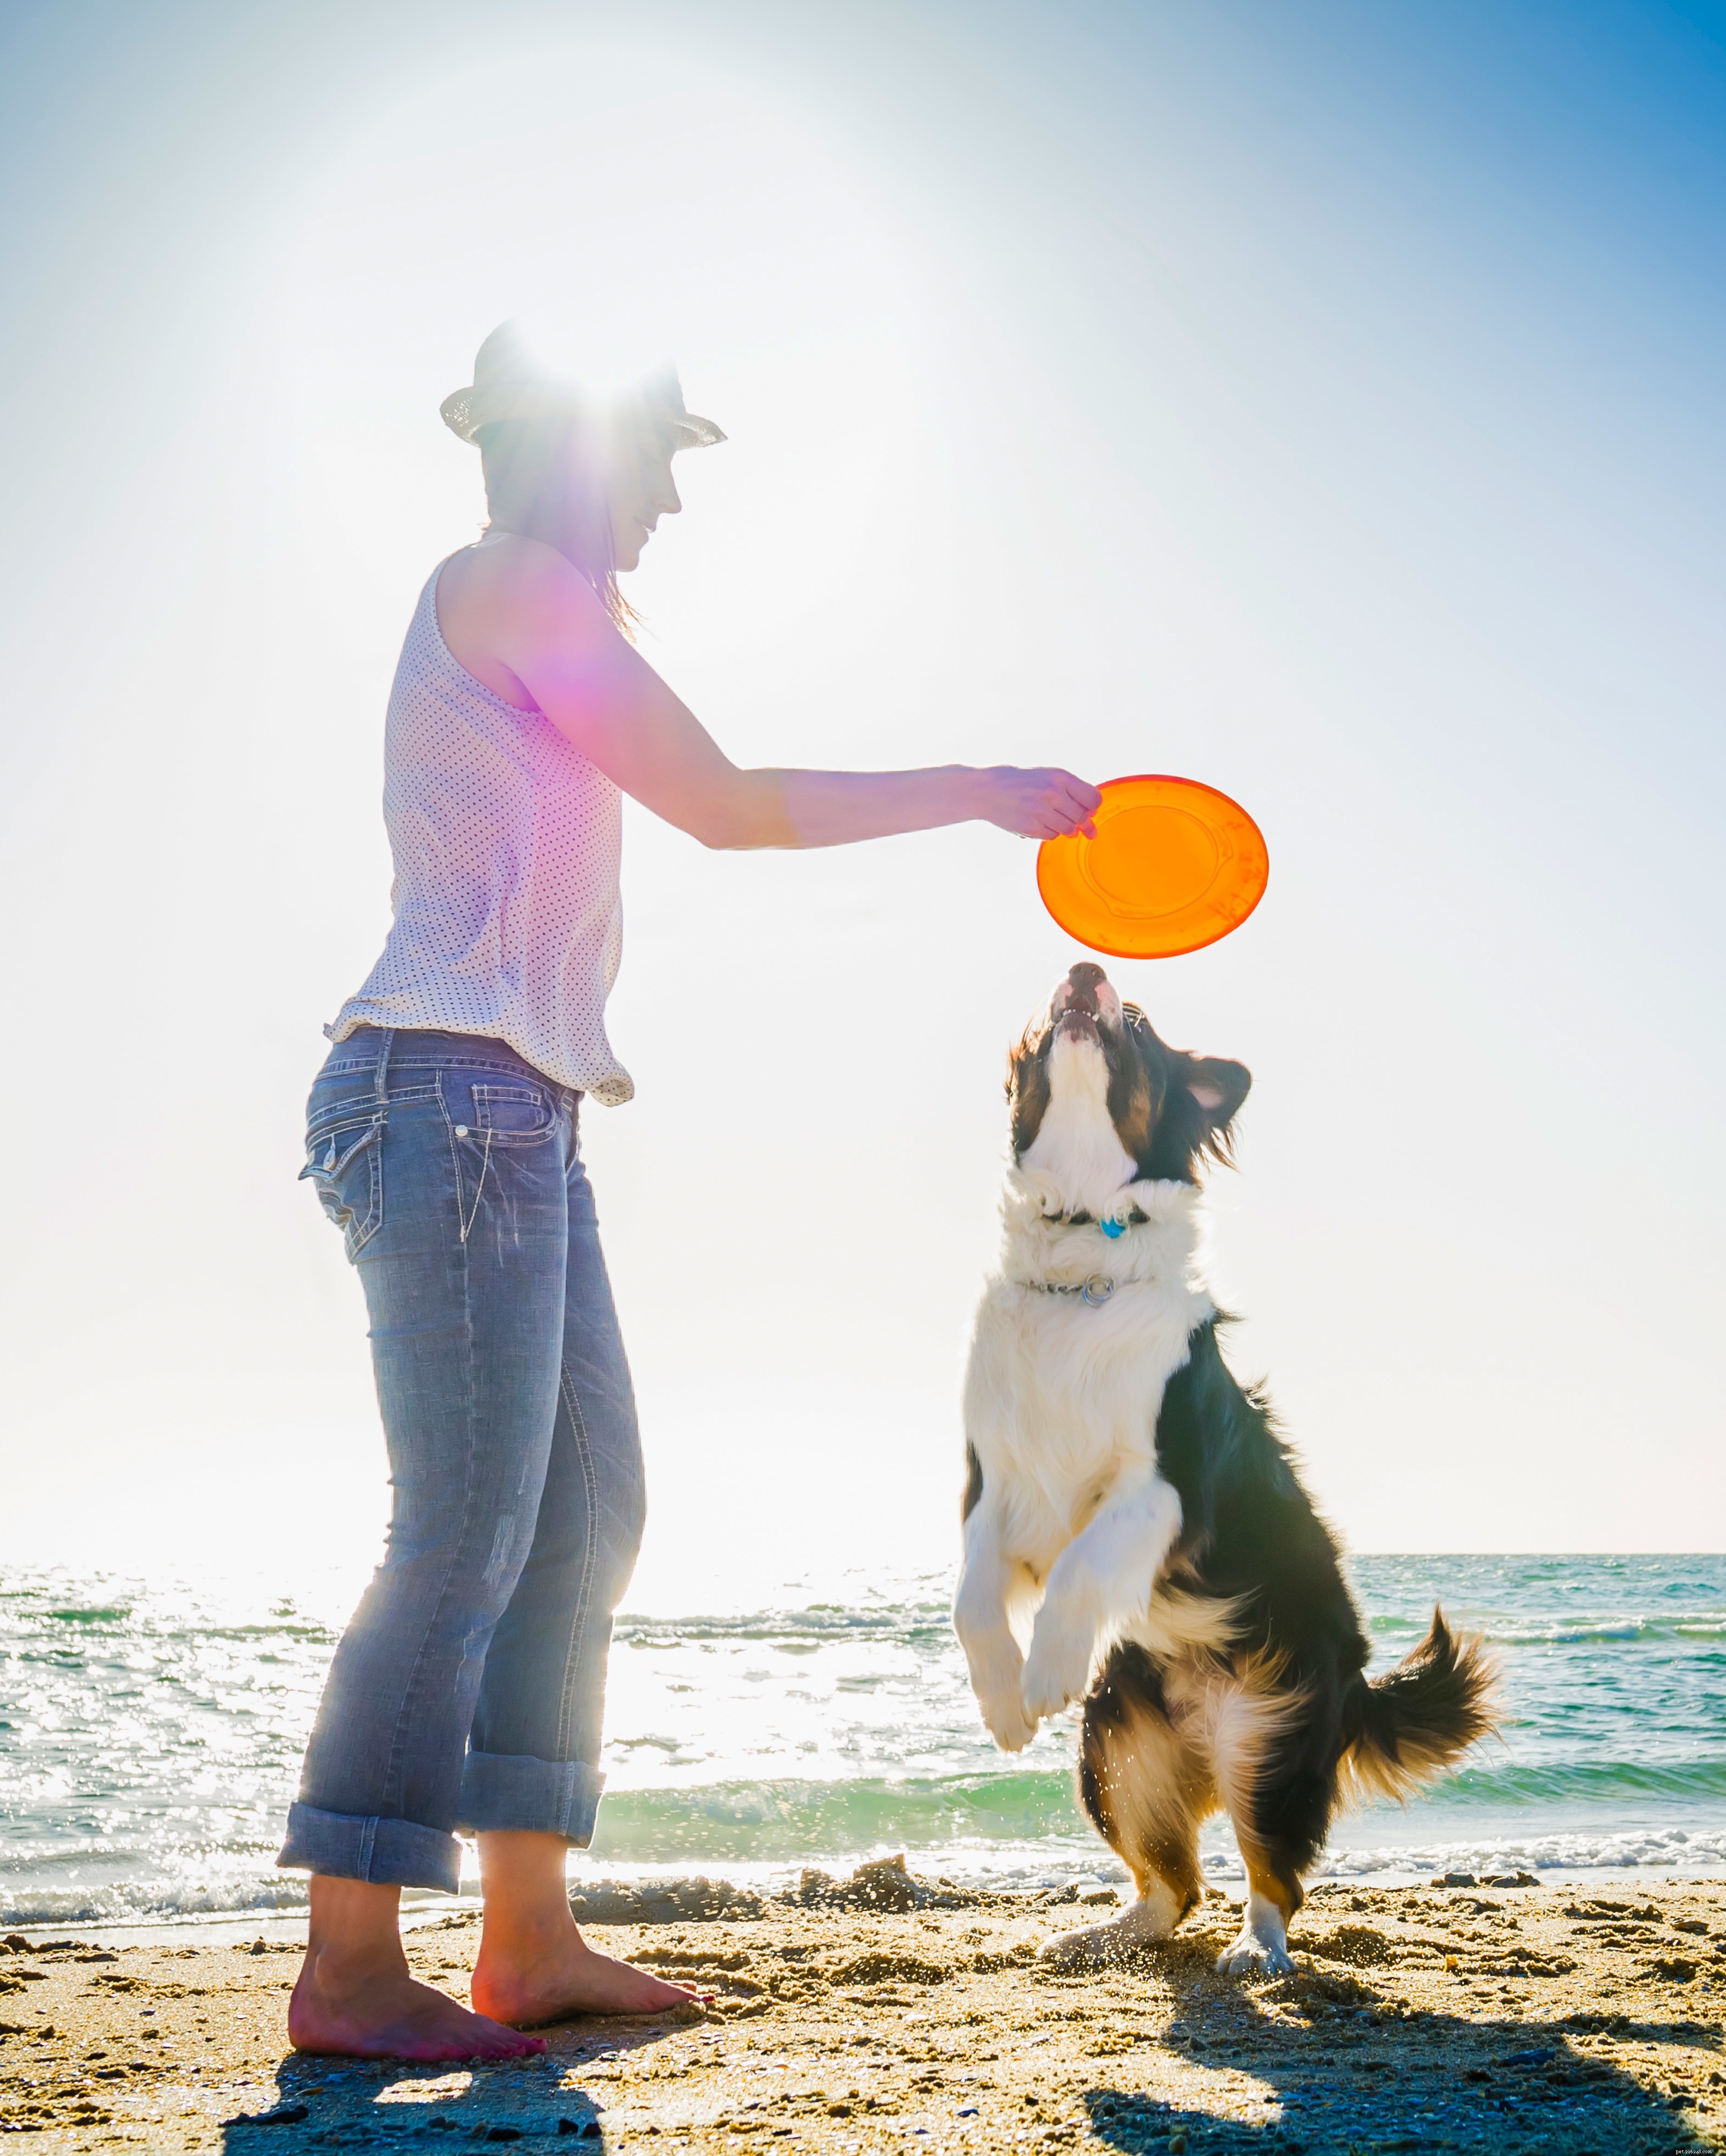 Segurança no verão:dicas para levar seu cachorro à praia